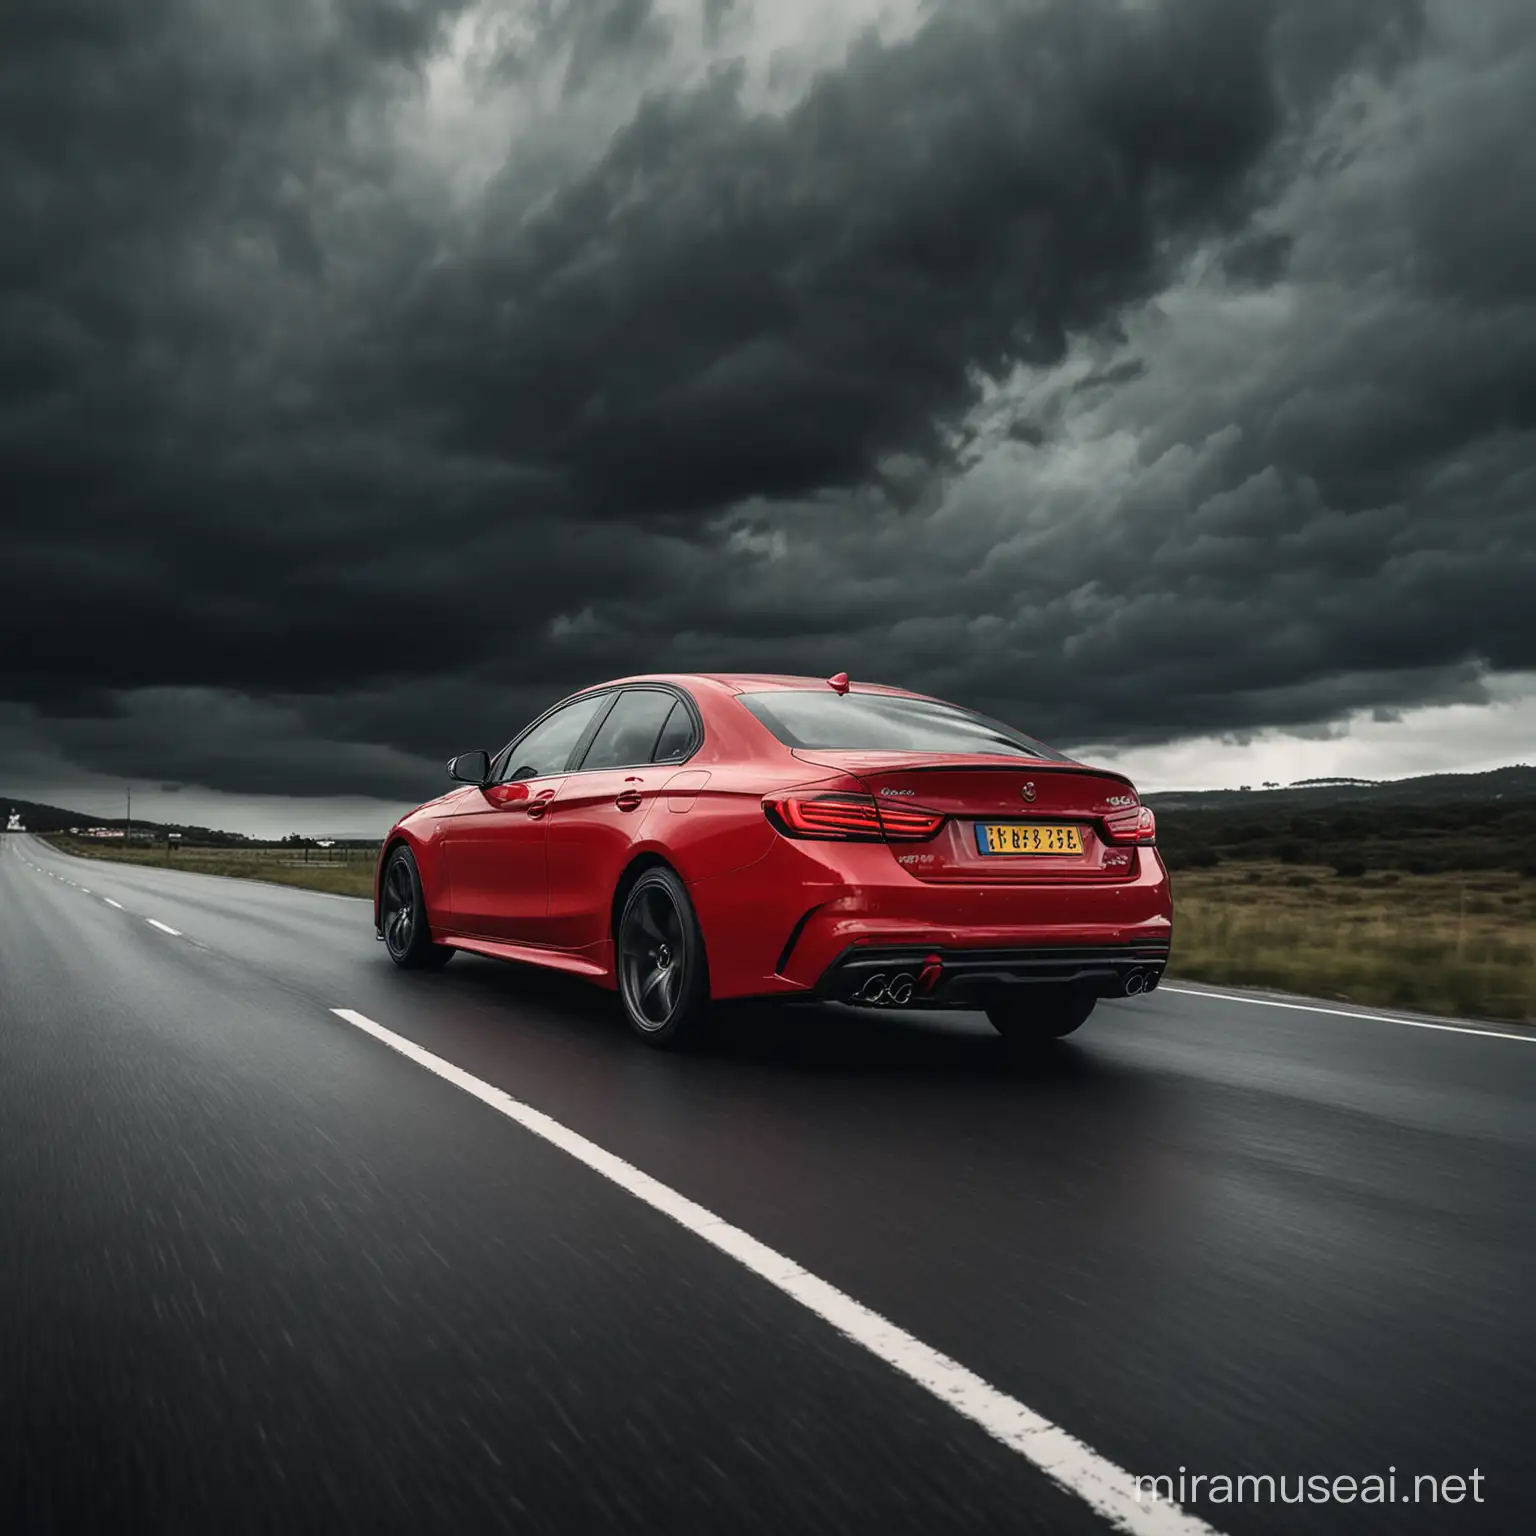 Red Car Speeding Through Dark Landscape